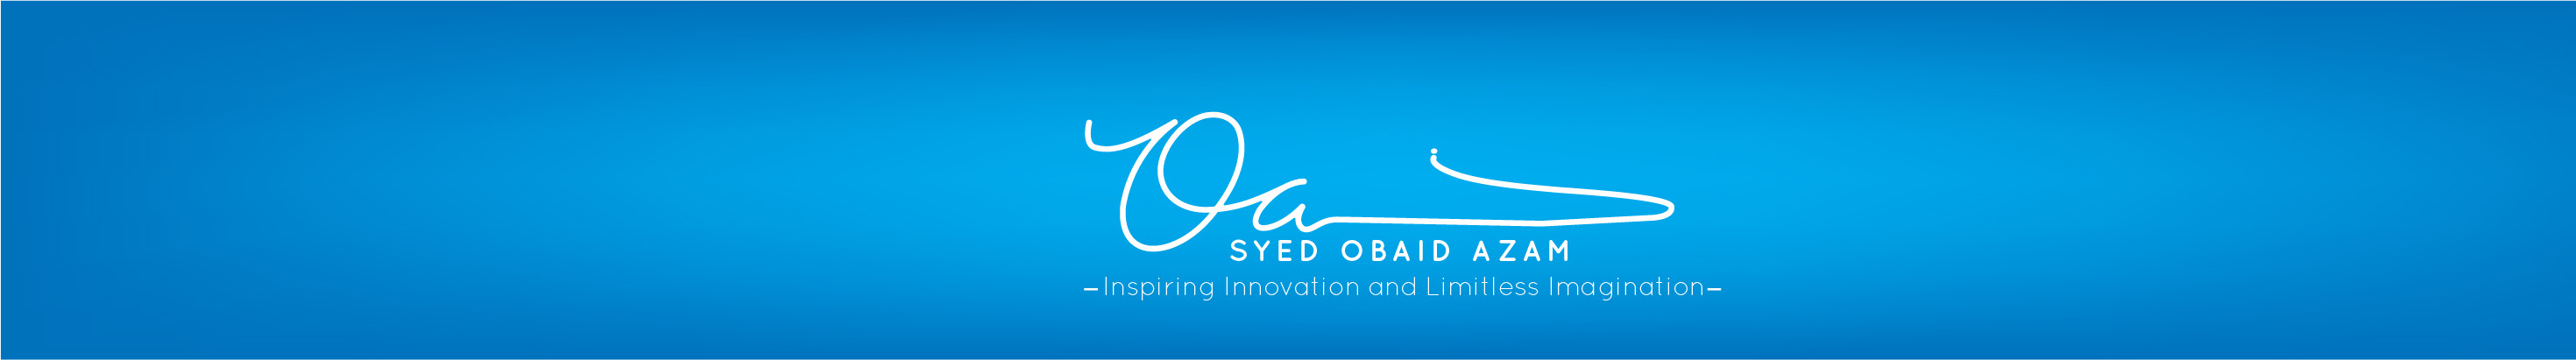 Profil-Banner von Syed Obaid Azam